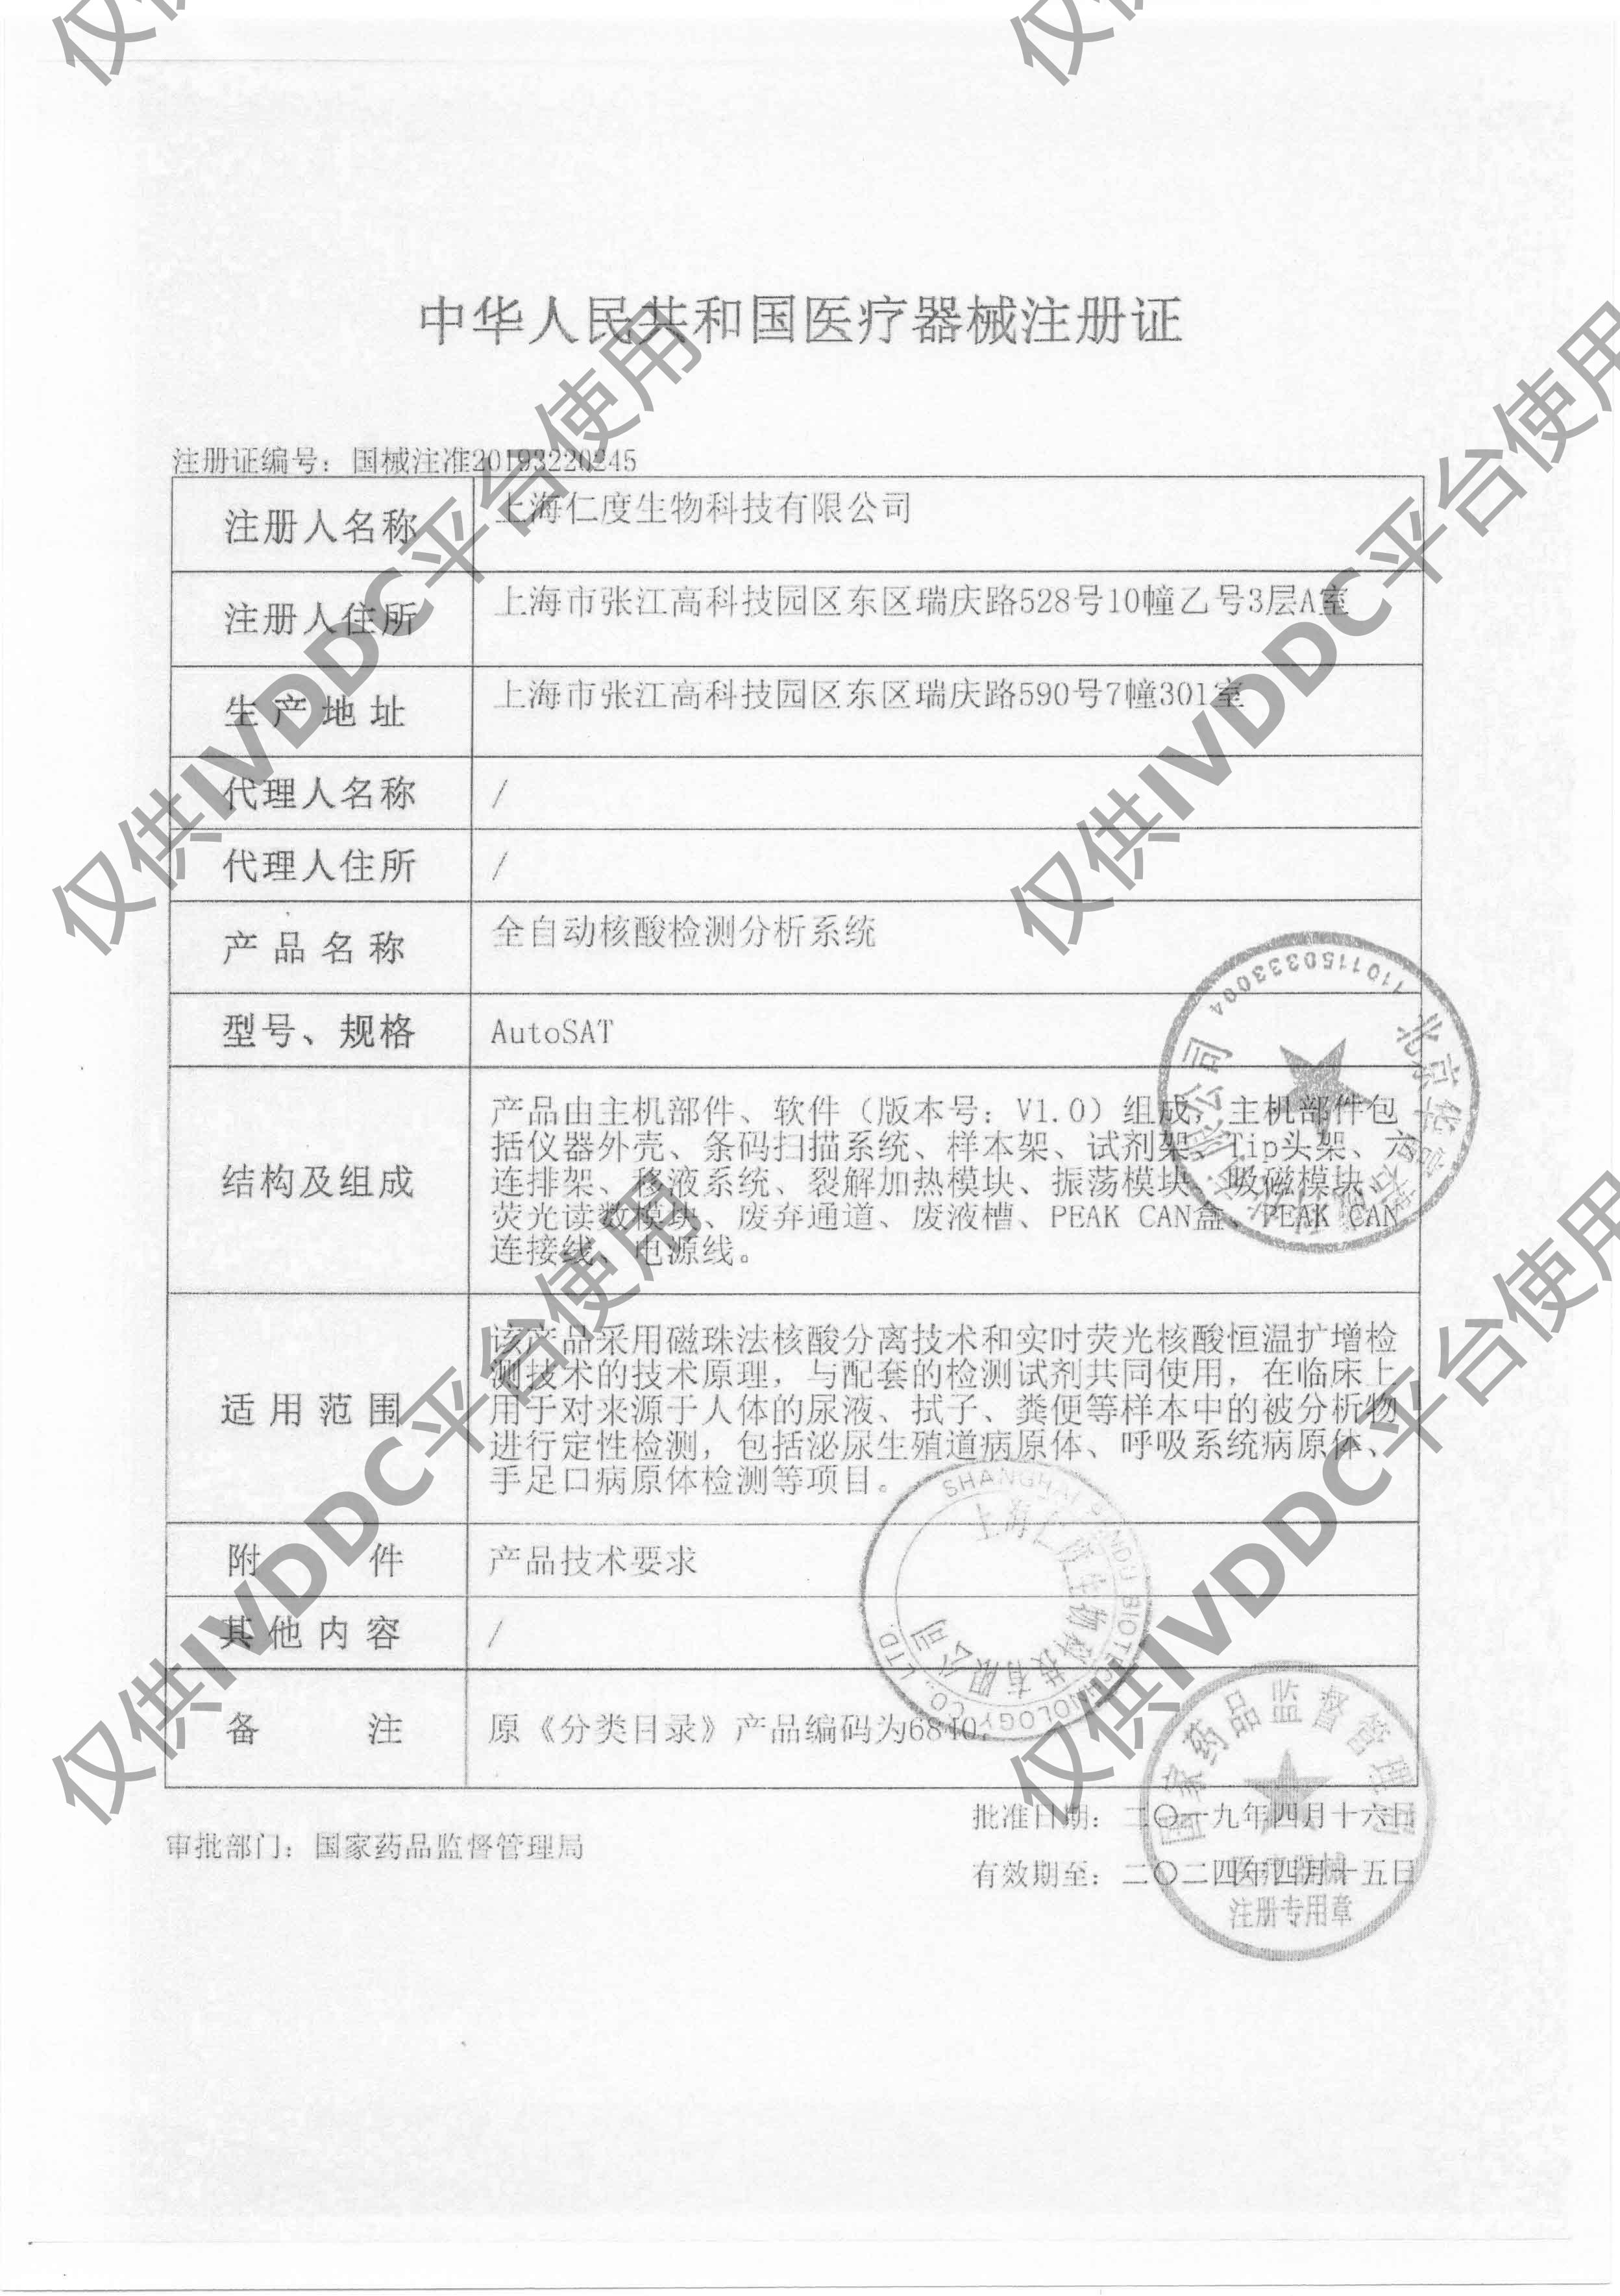 【上海仁度】 全自动核酸检测分析系统 AutoSAT注册证